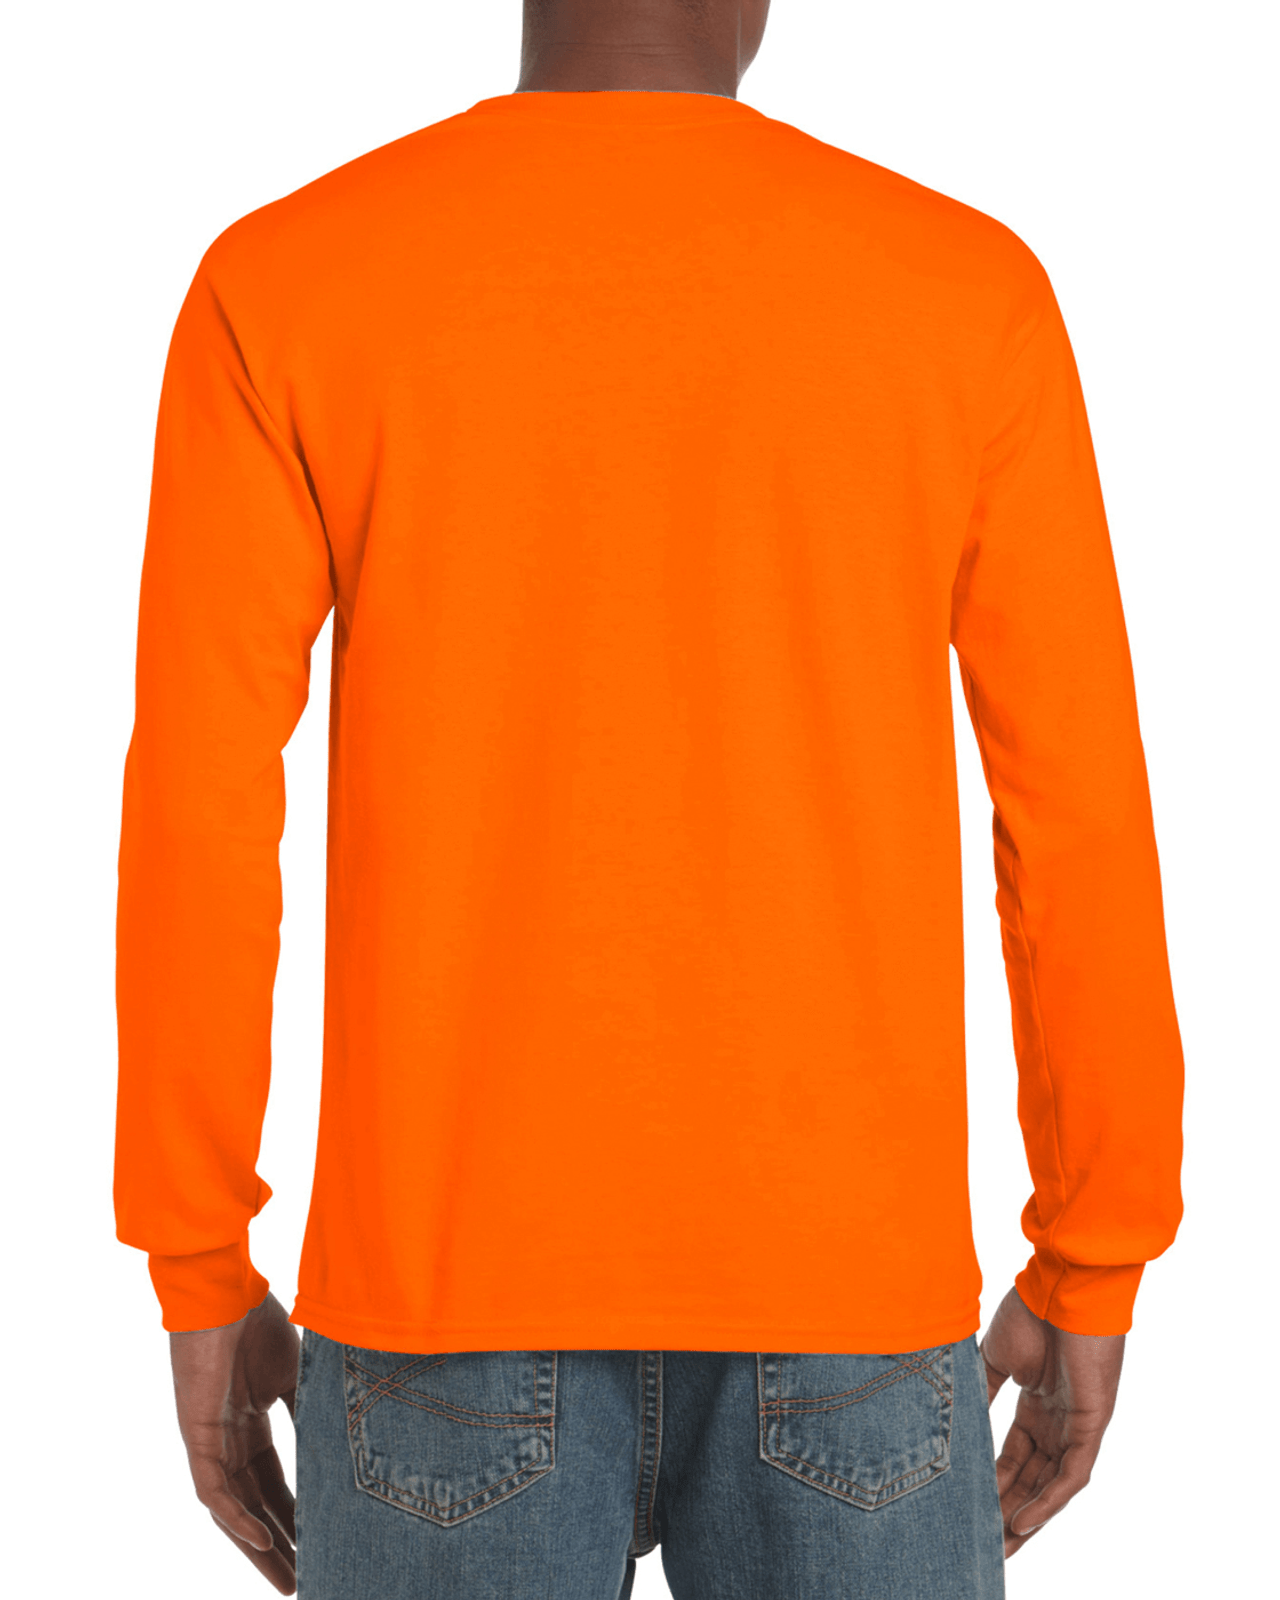 Men's Ultra Cotton Adult Long Sleeve T-Shirt, 2 Pack - Gildan